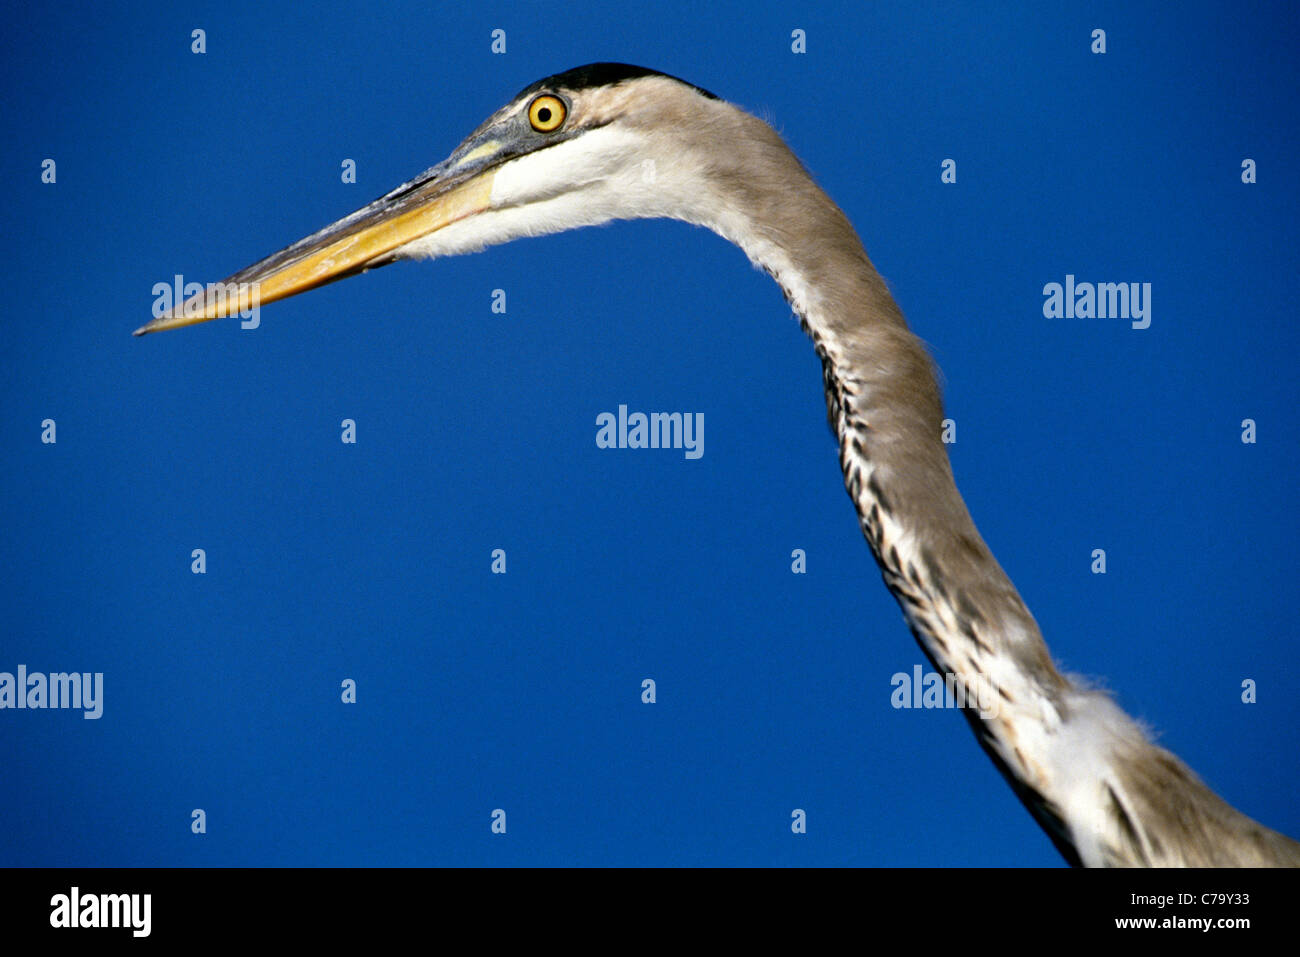 Il grande airone cenerino, segnato da un lungo collo, è il più grande heron in Nord America. Questo ritratto mostra la sua testa e collo contro un cielo blu. Foto Stock